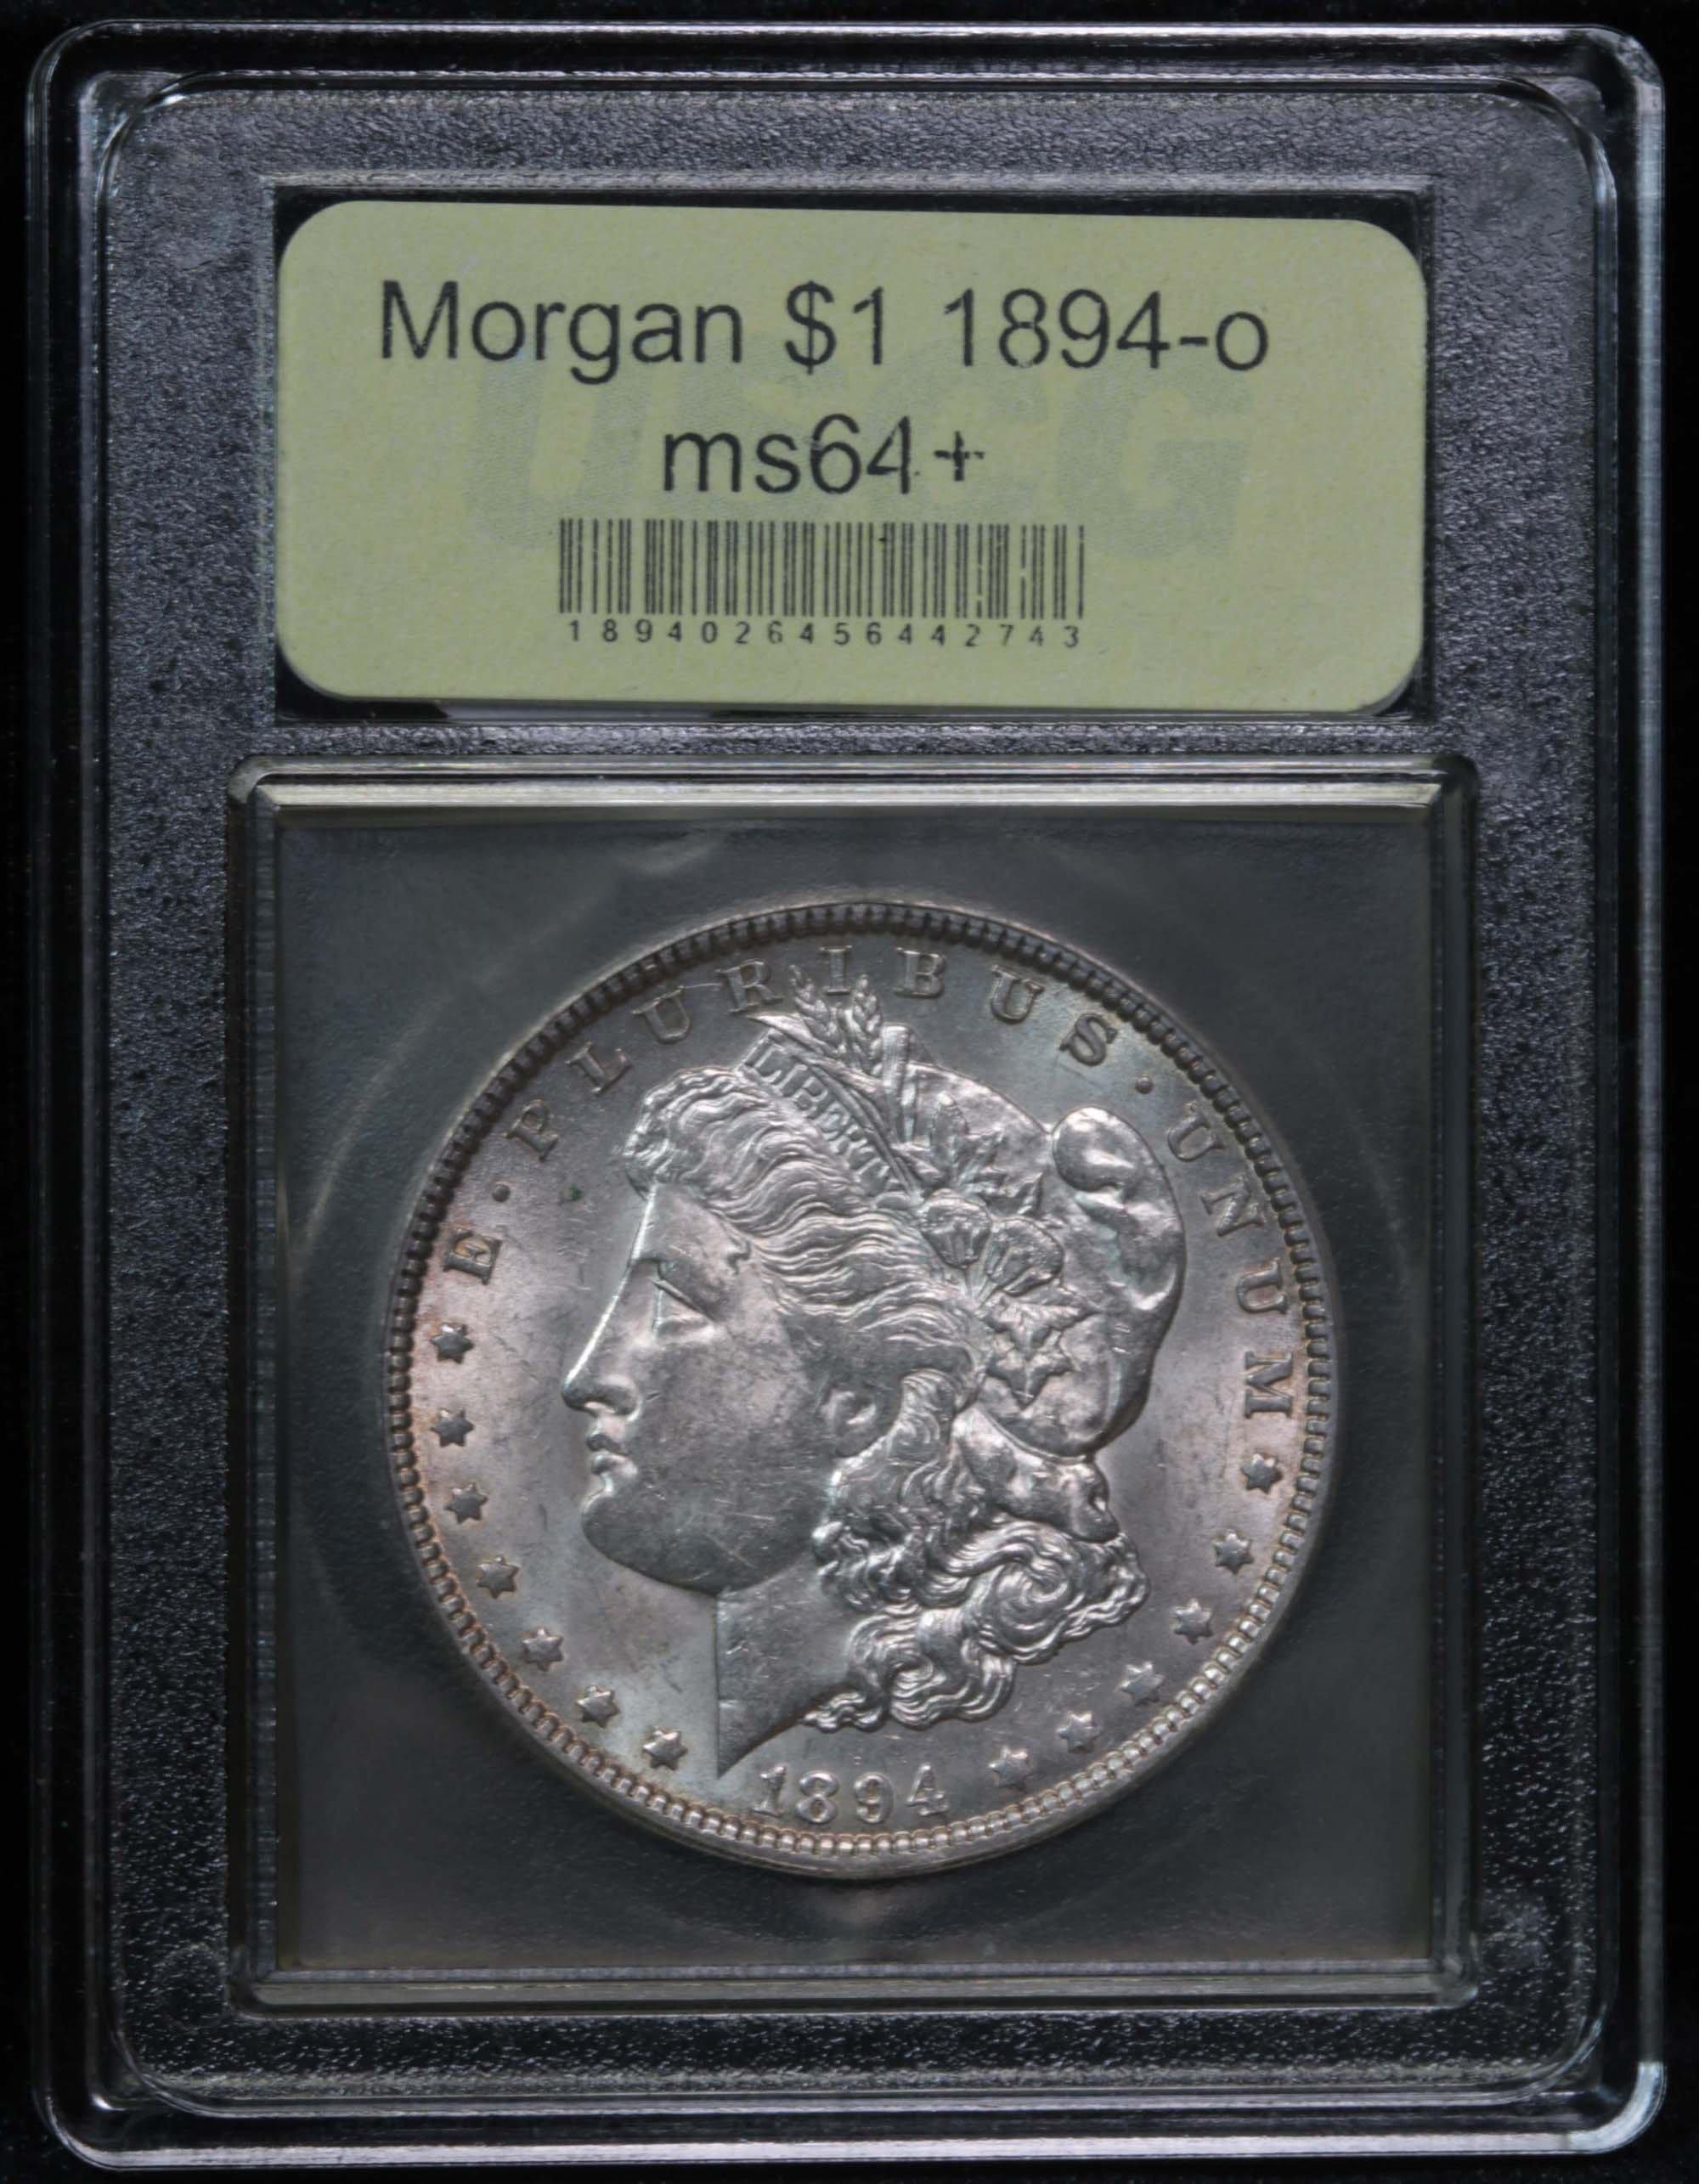 ***Auction Highlight*** 1894-o Morgan Dollar $1 Graded Choice+ Unc by USCG (fc)